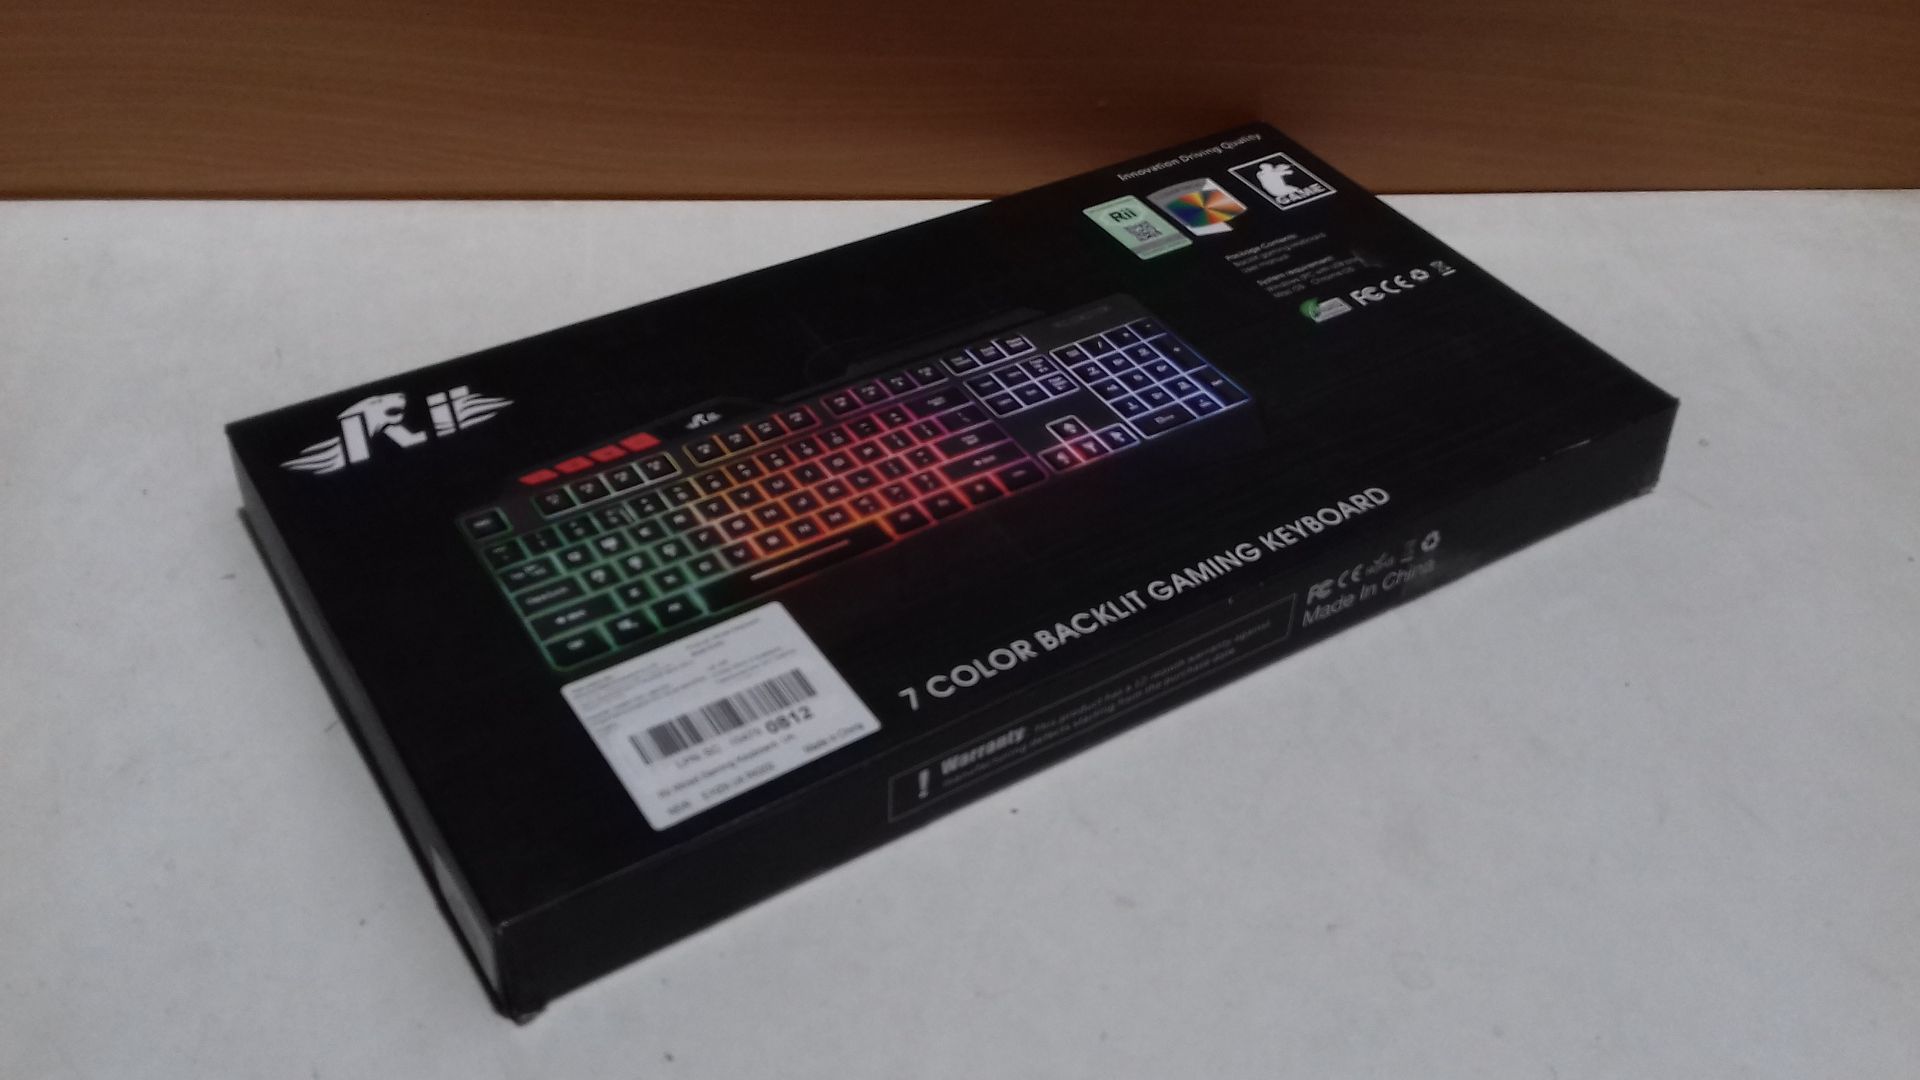 RRP £17.99 Rii RK900 Large Size 7 Colour LED Rainbow Gaming Keyboard UK Layout - Black - Image 2 of 2